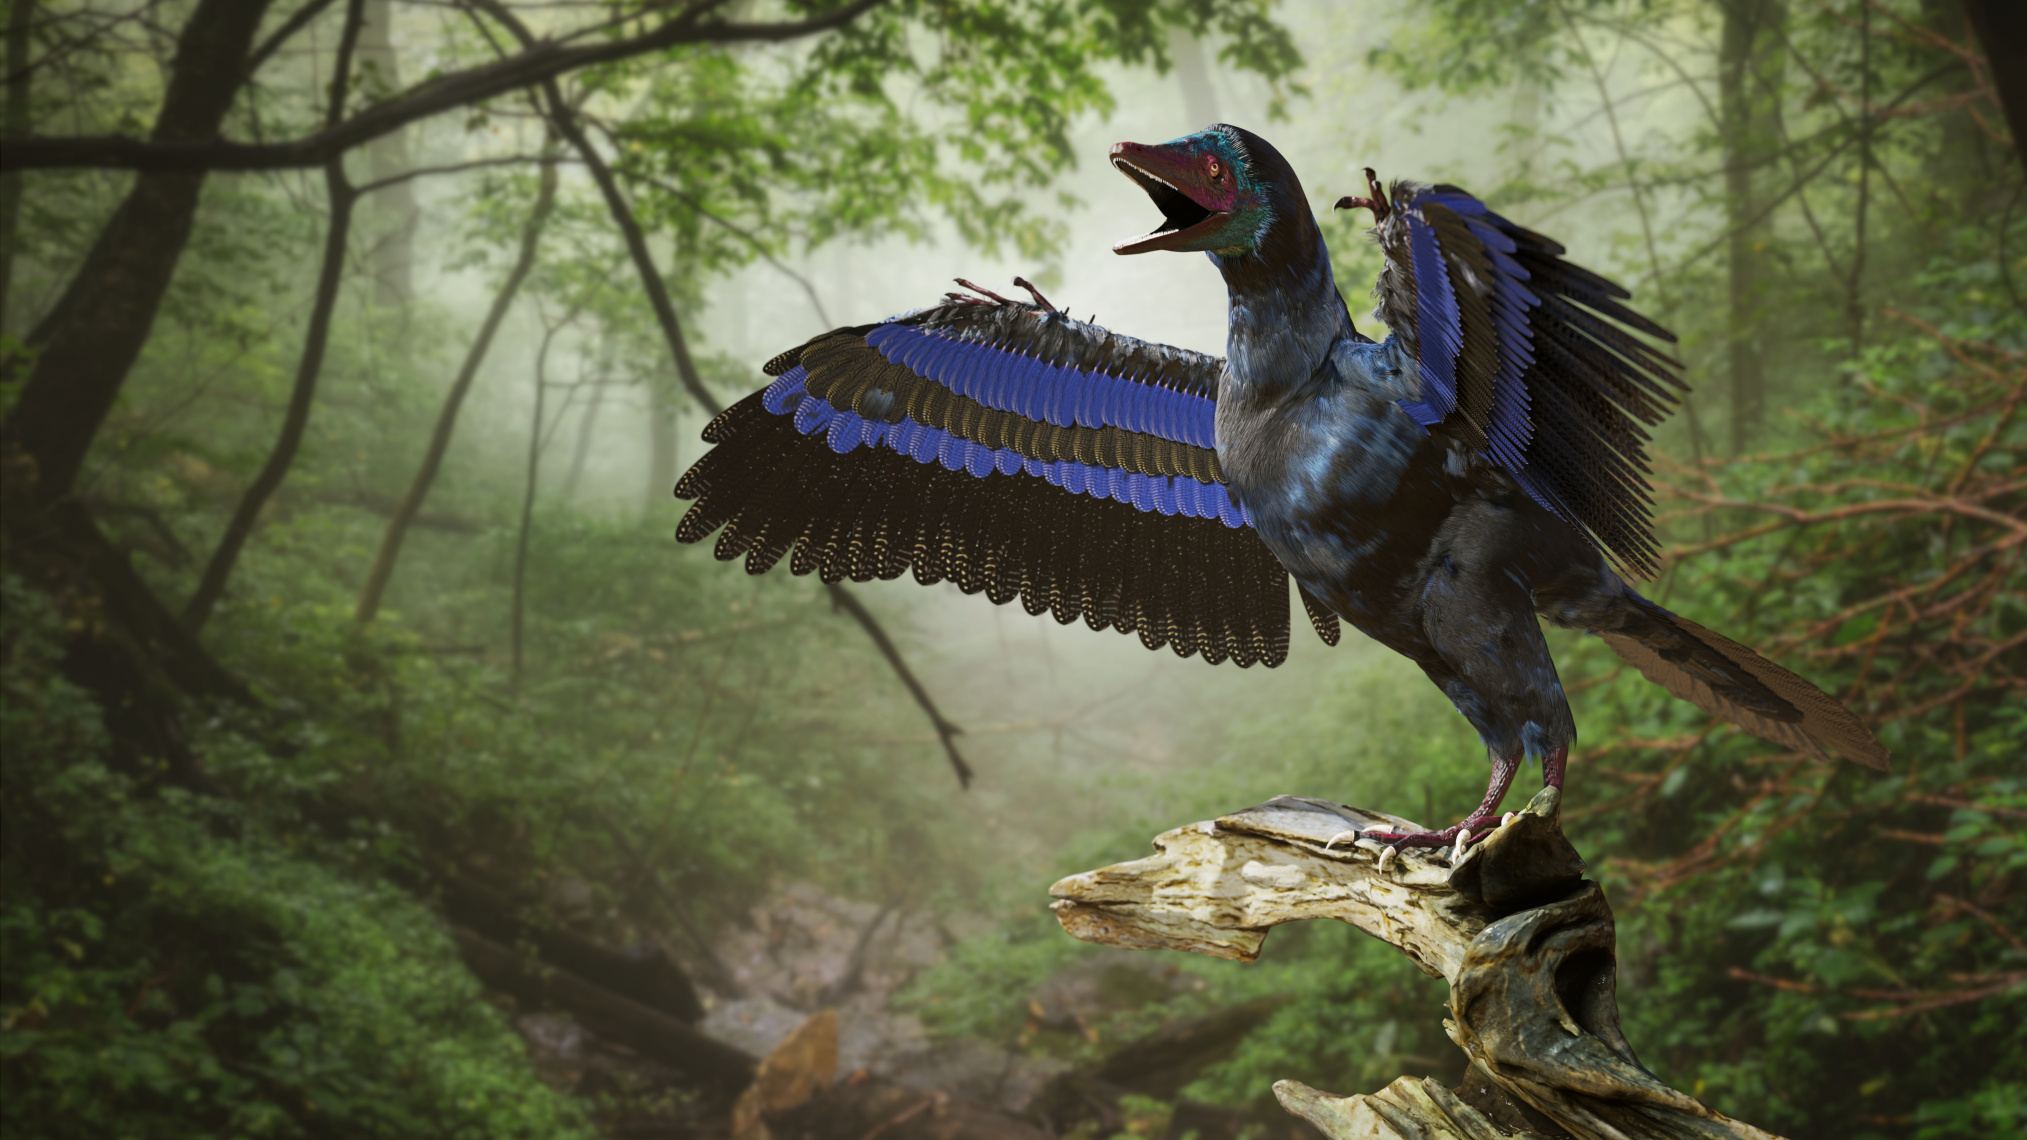 Archaeopteryx, dinozaur asemănător unei păsări din perioada Jurasicului târziu cu aproximativ 150 de milioane de ani în urmă (redare 3d)